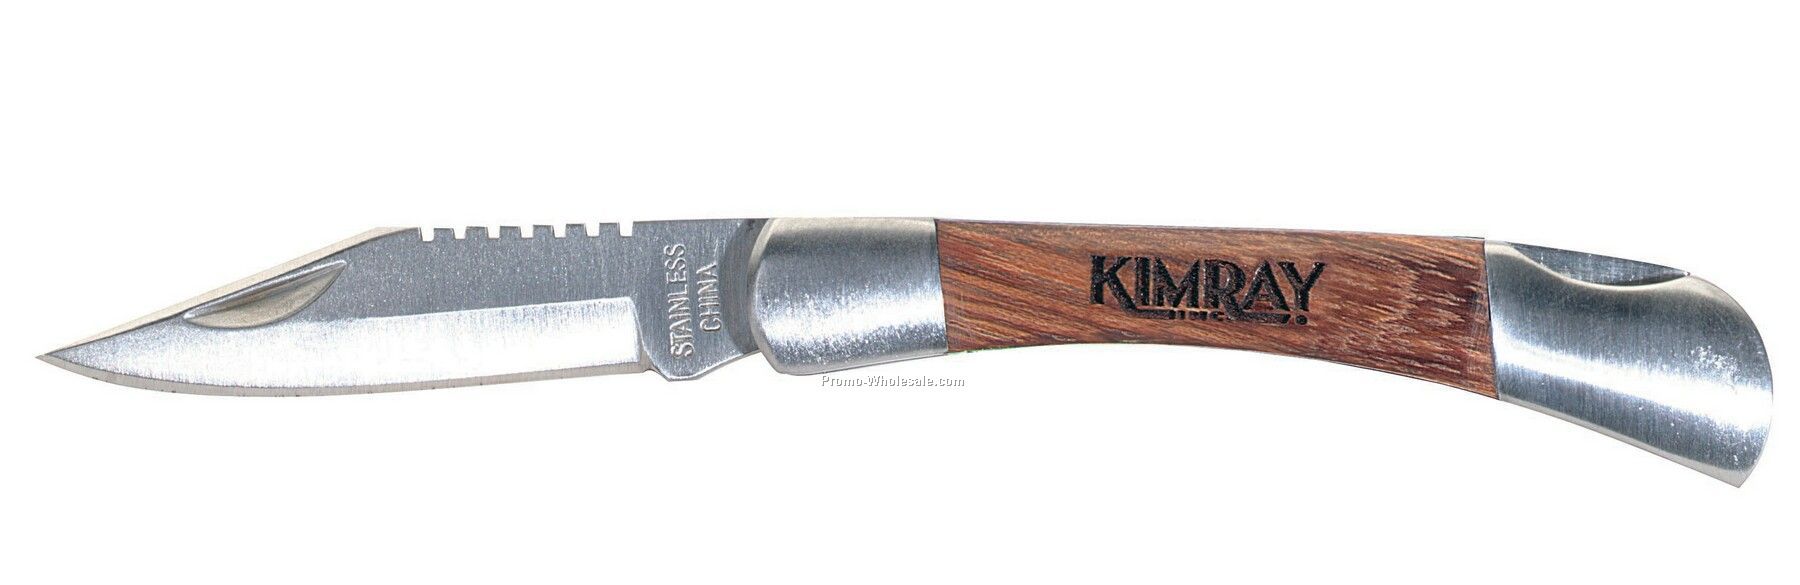 V-line Small Rosewood Pocket Knife (Gold)